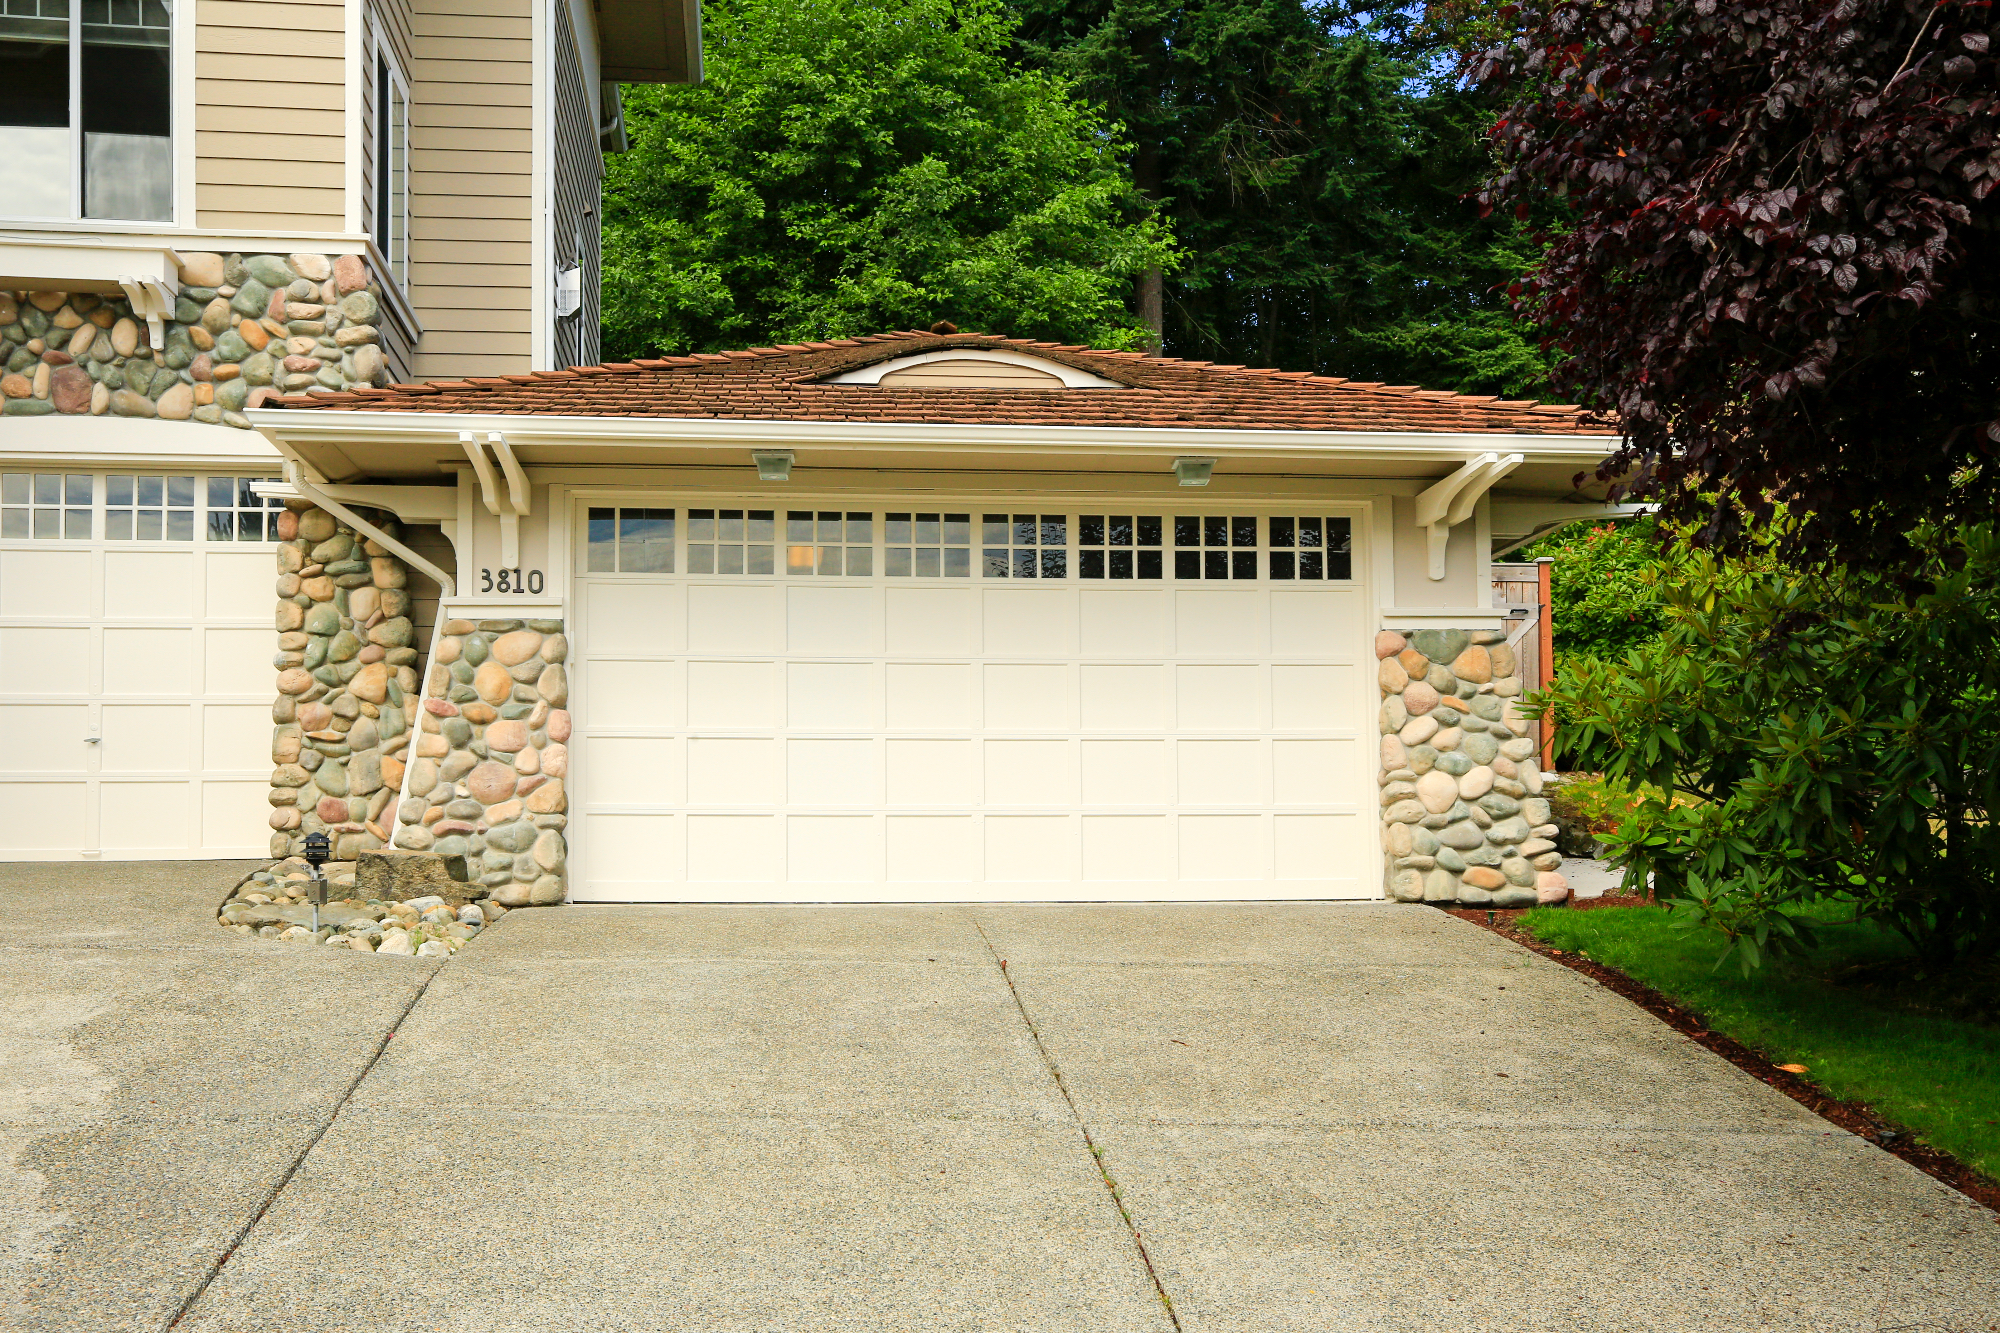 Nova garažna vrata bi lahko konkretno pomagala naši hiši